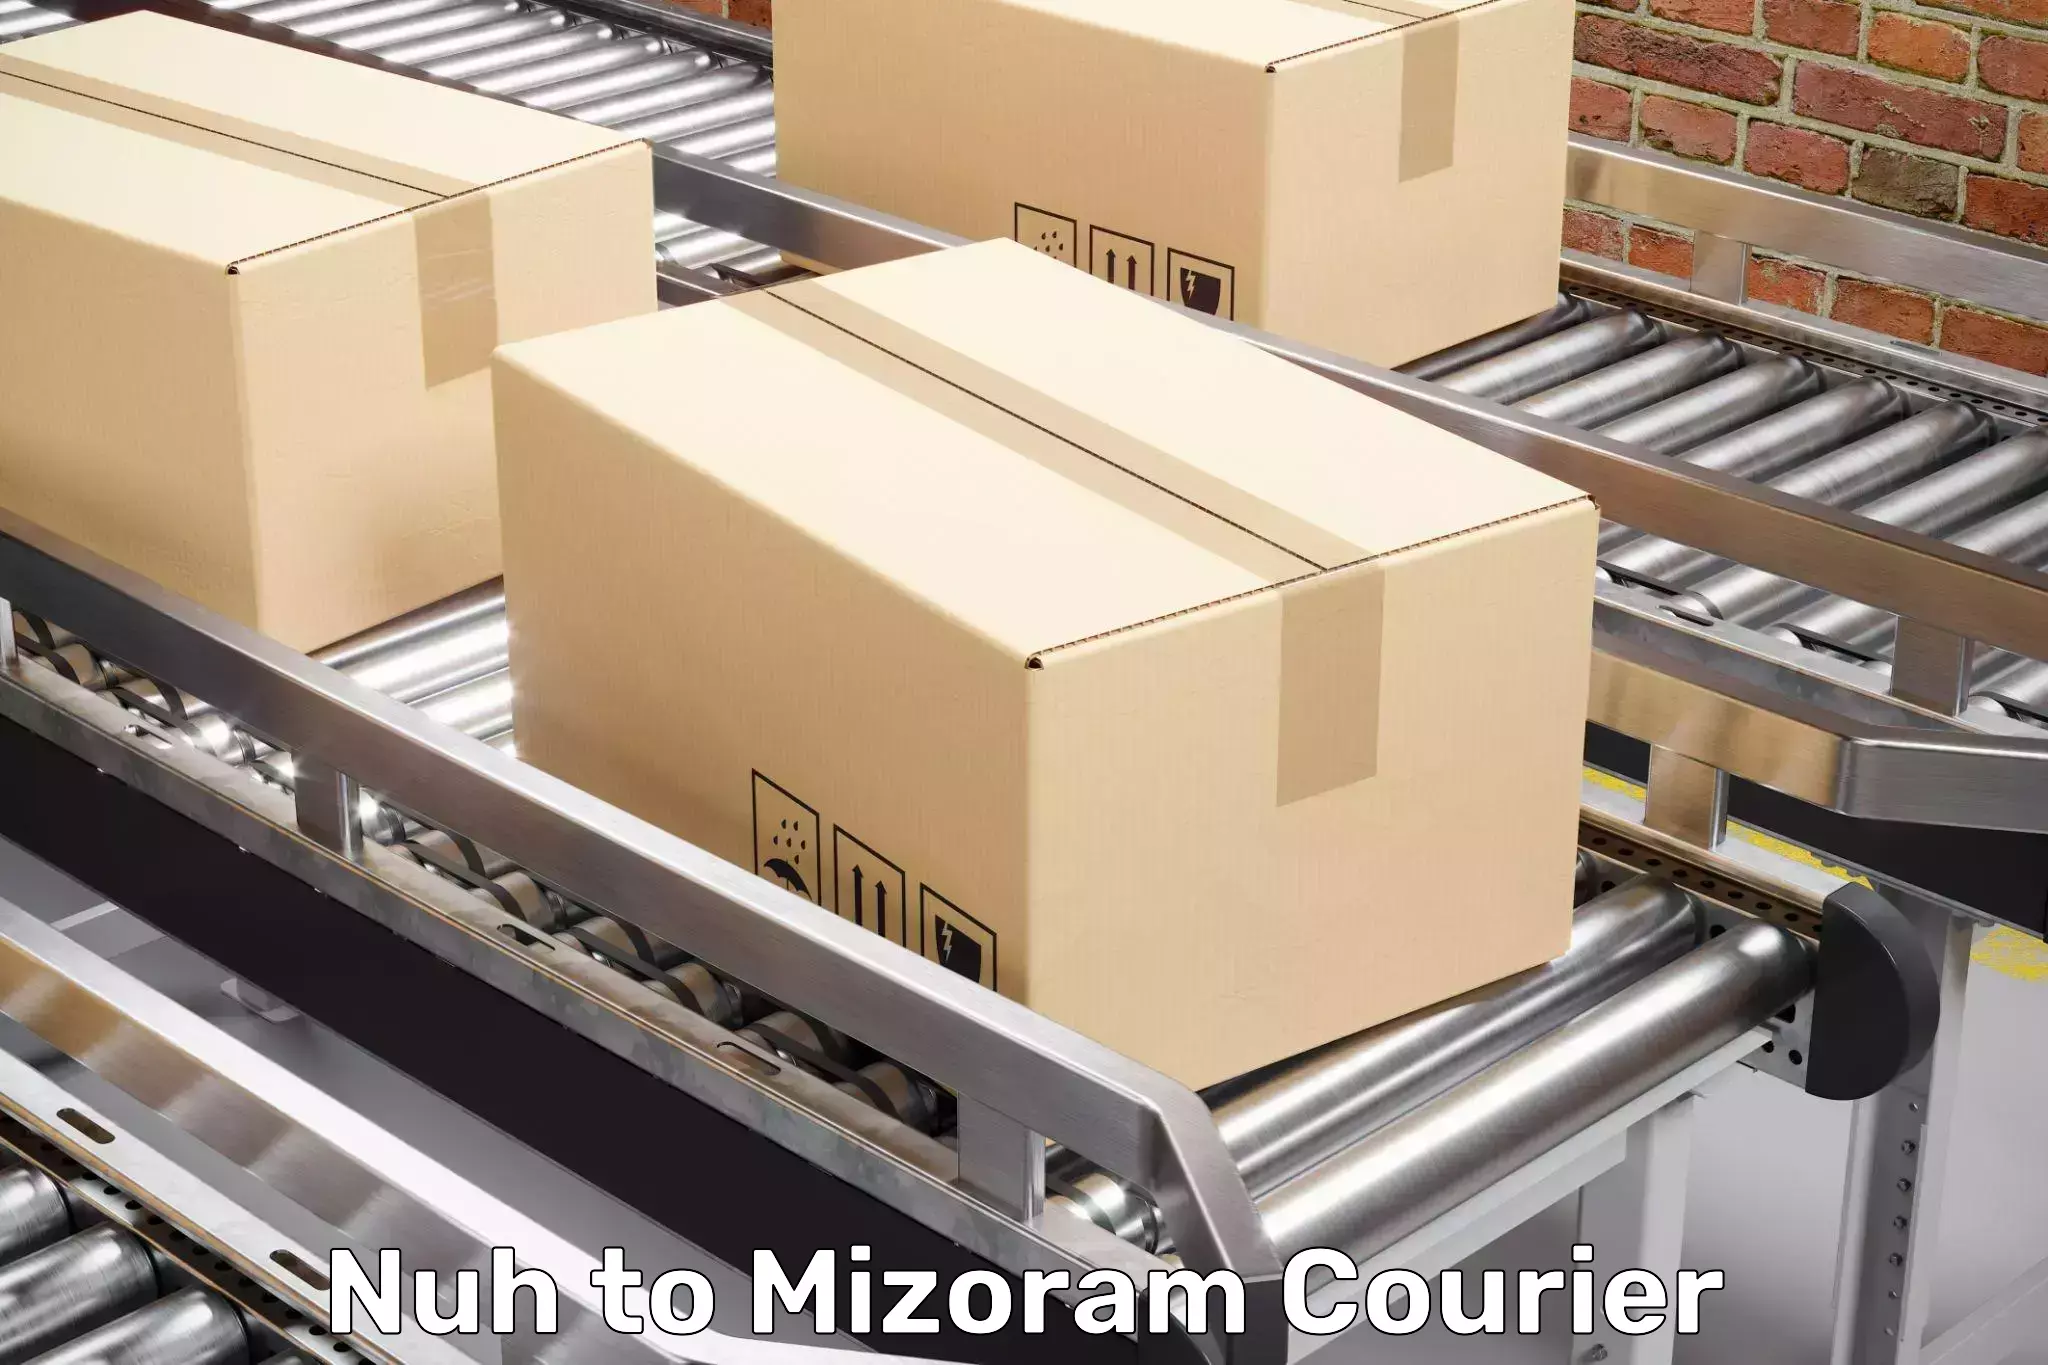 Trusted furniture transport in Nuh to Mizoram